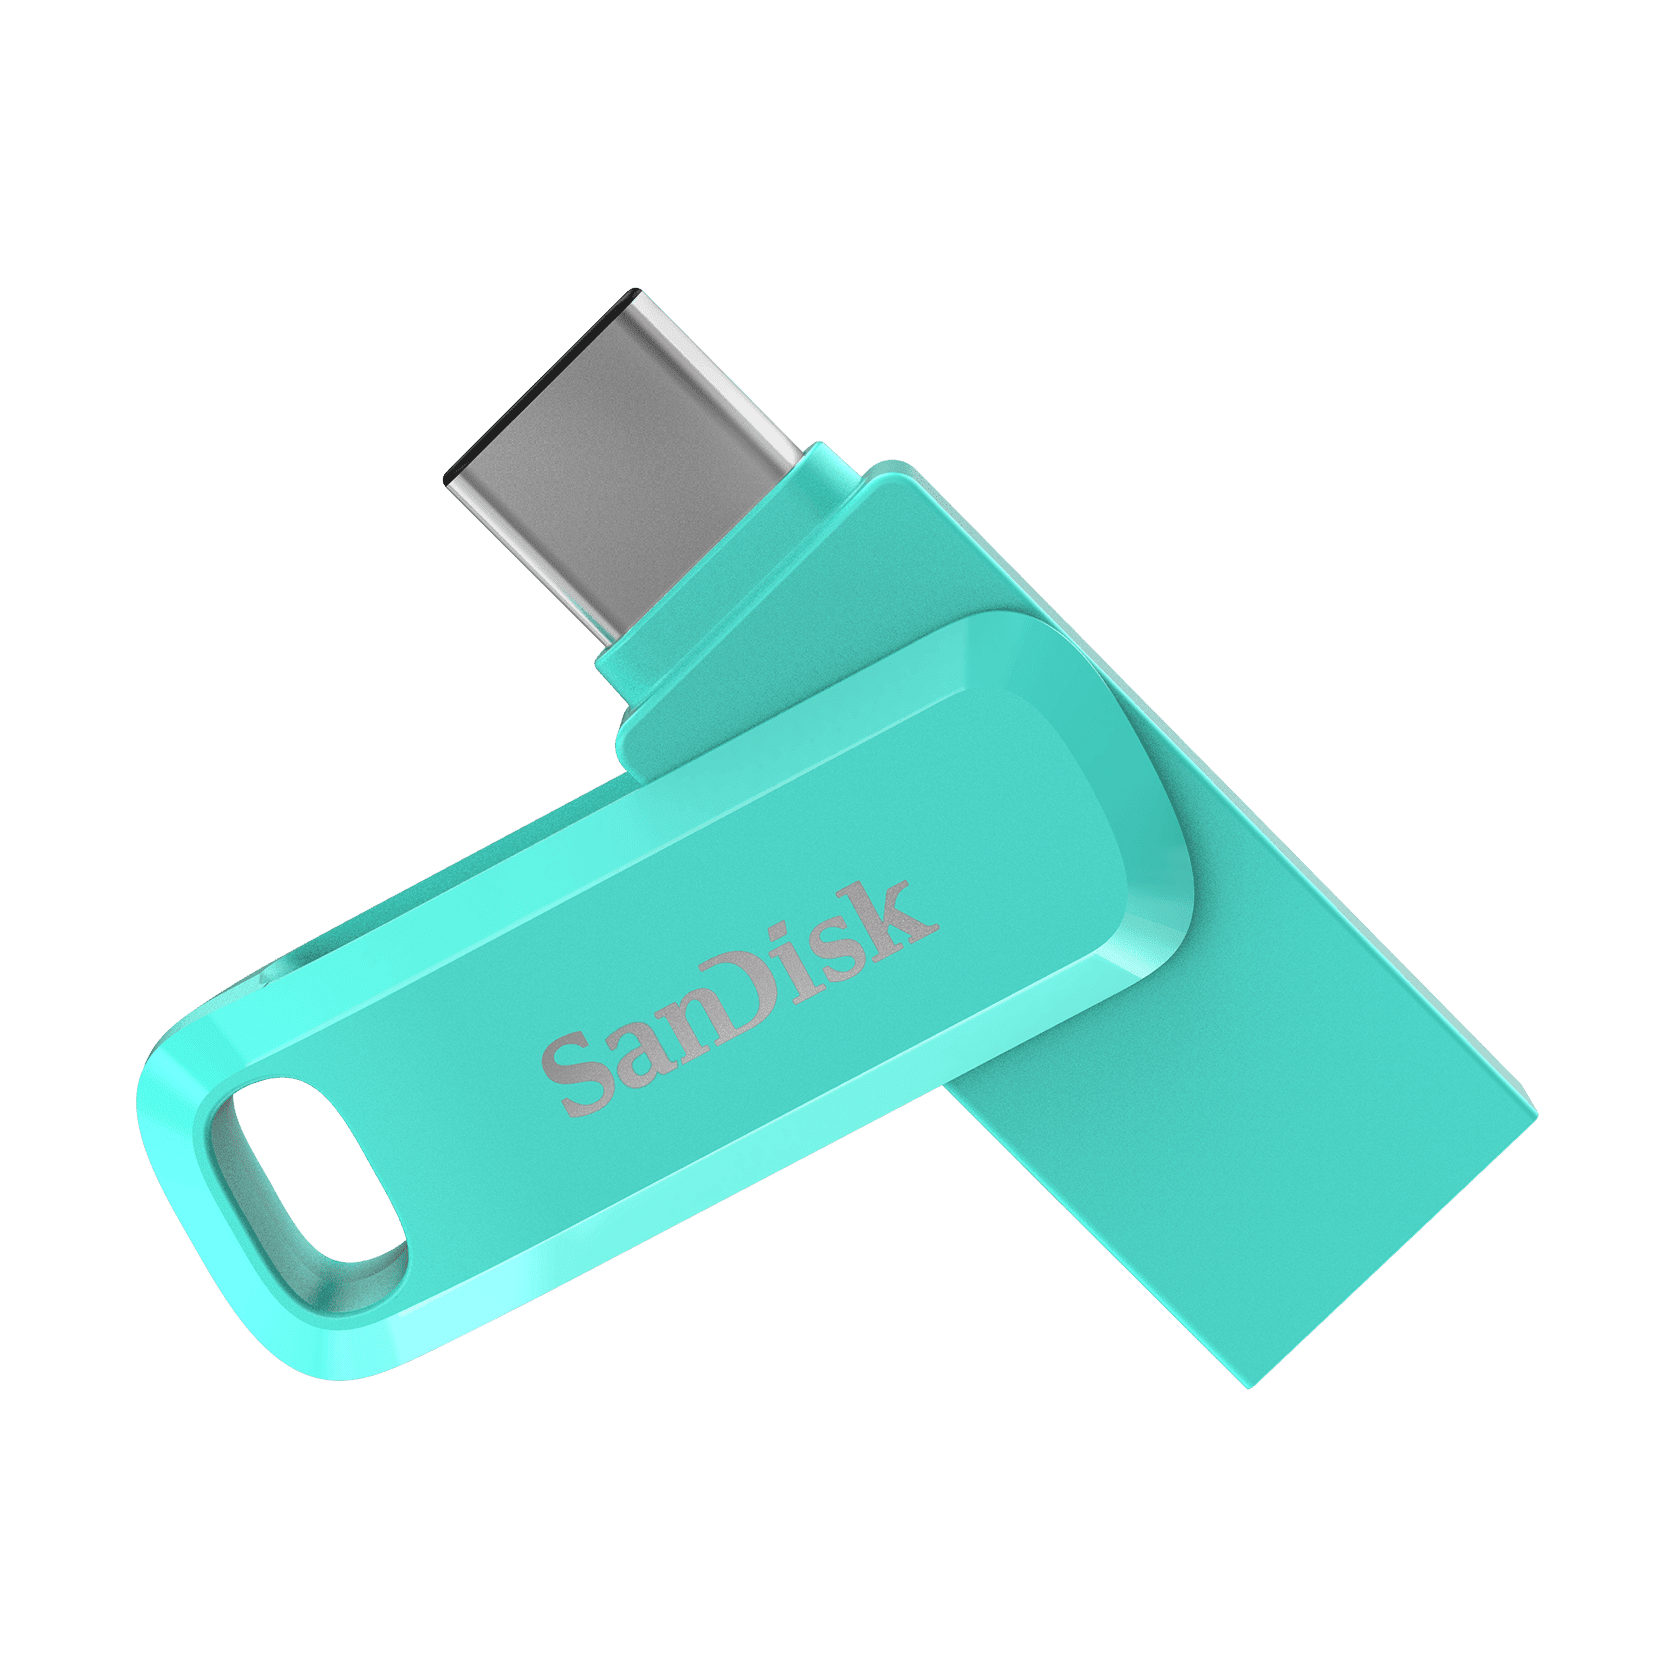 SanDisk Ultra Dual Drive Go - 256 Go - Clé USB Sandisk sur